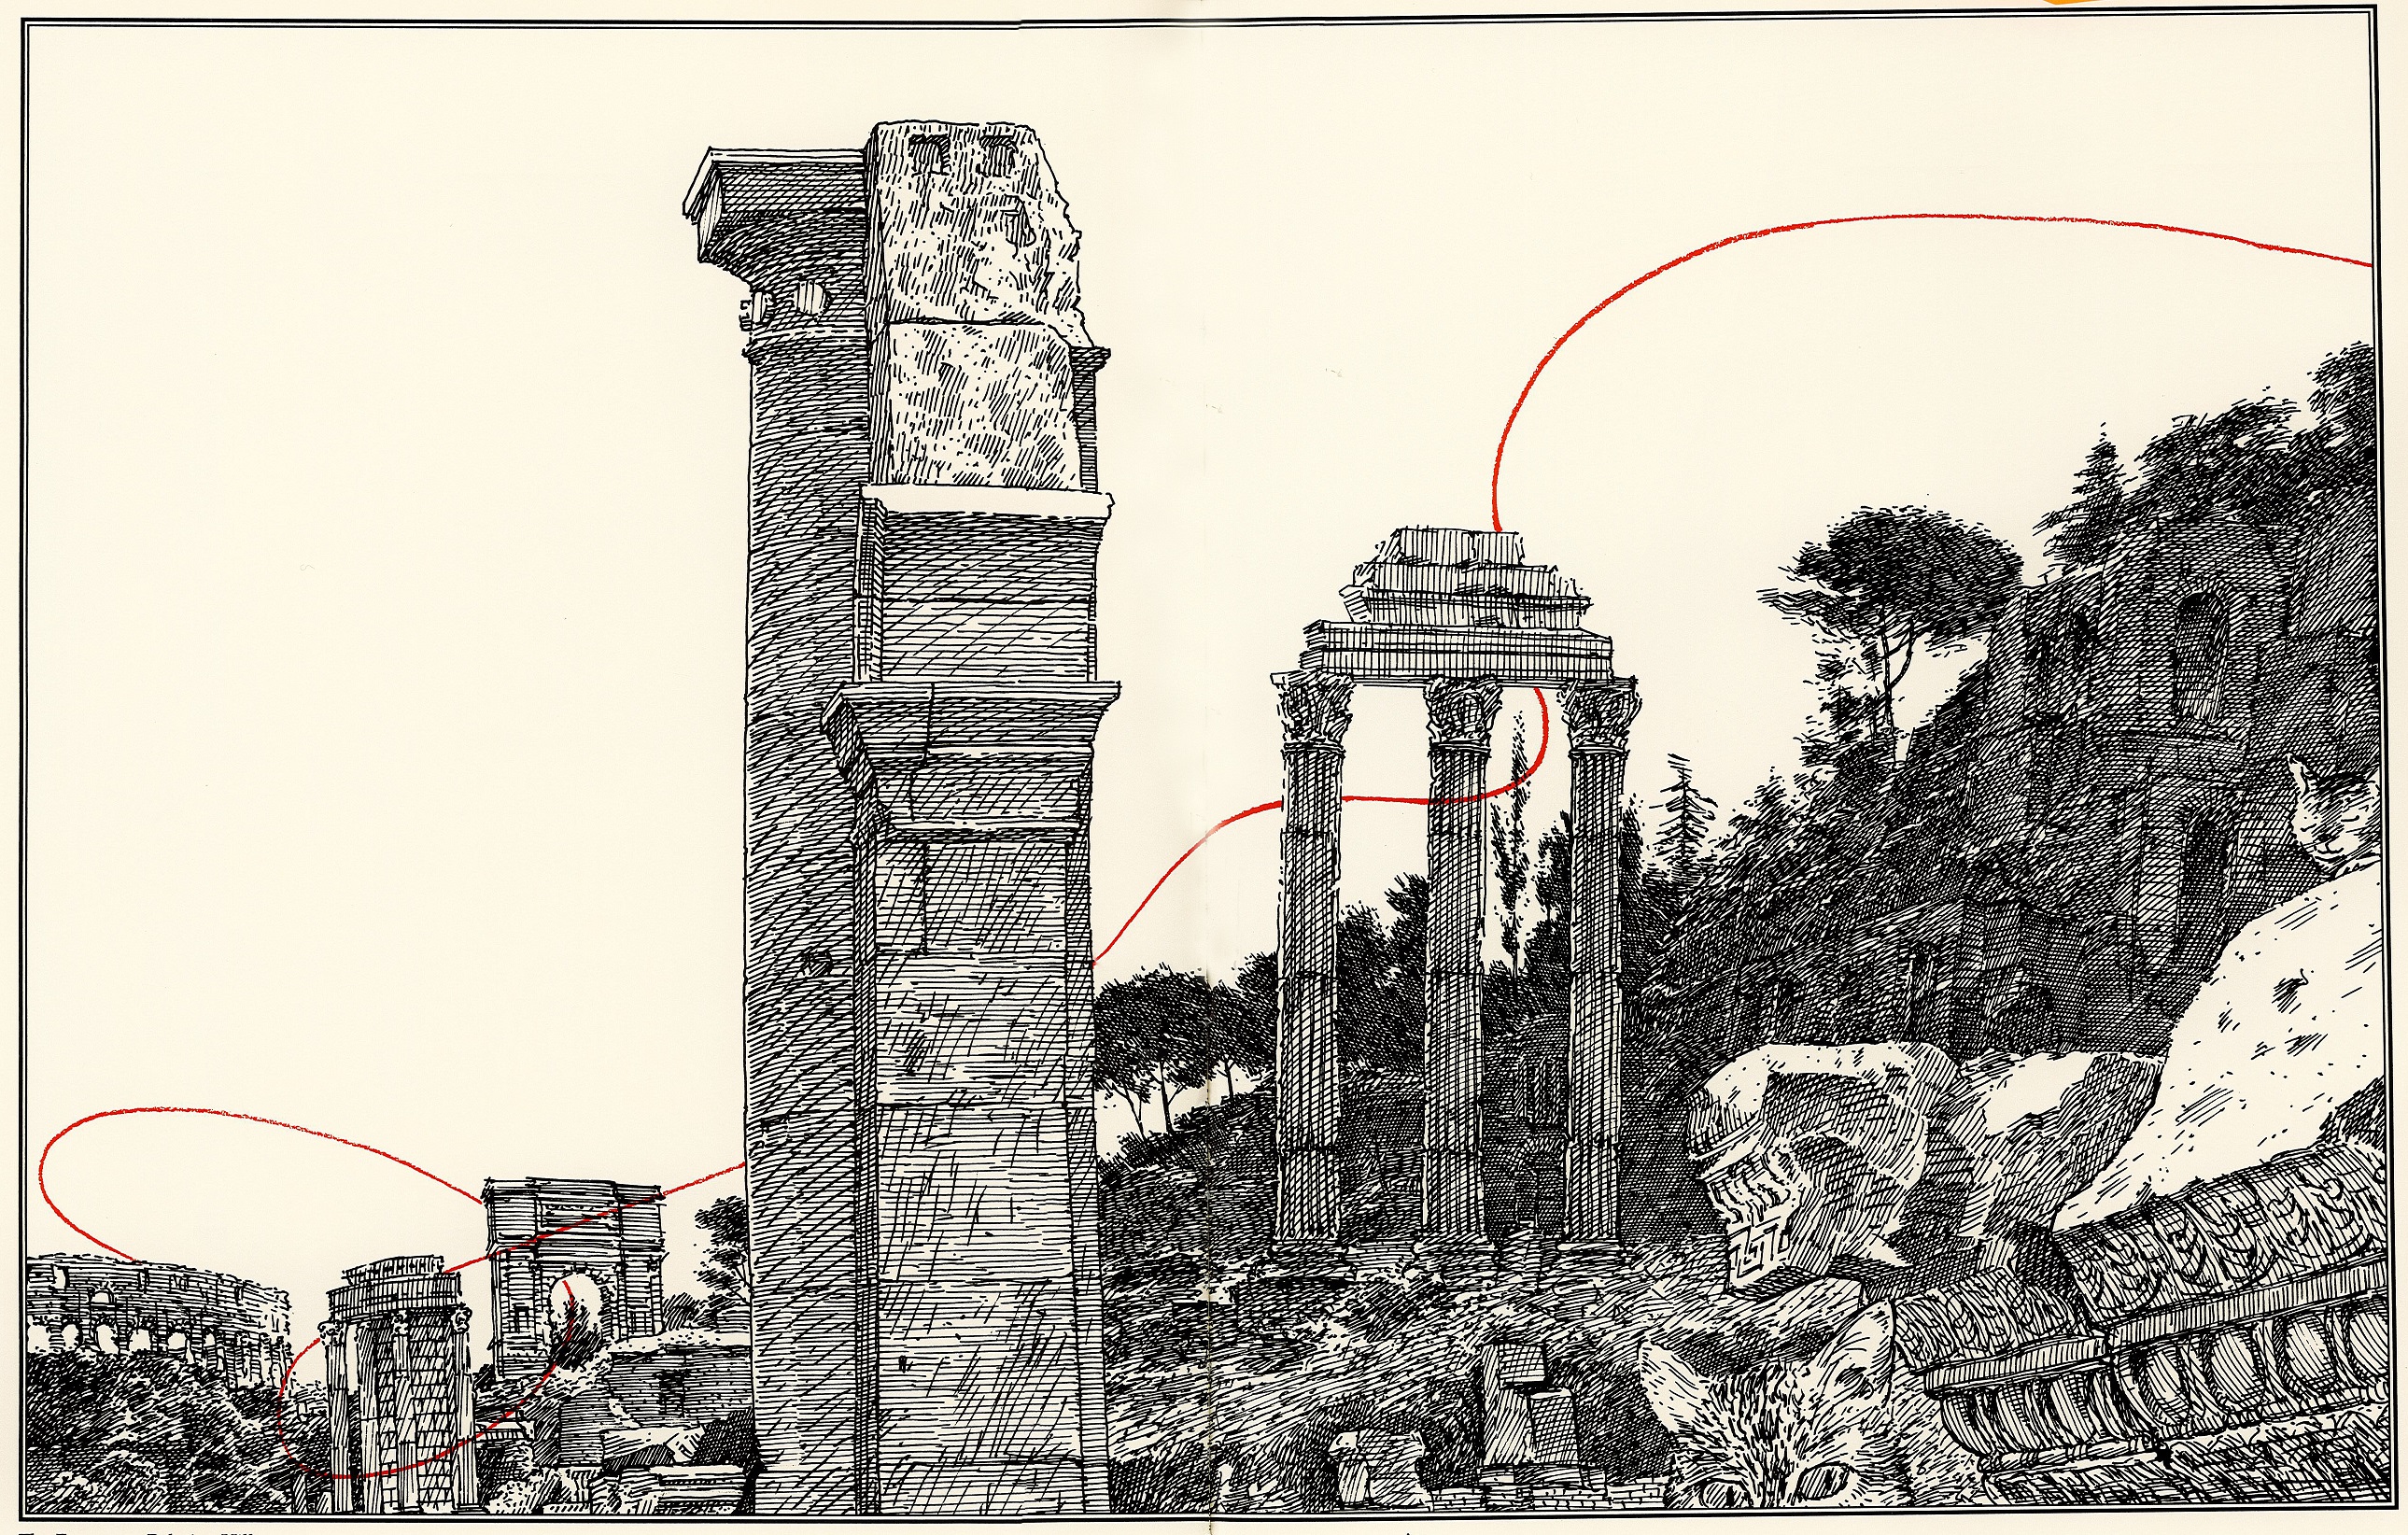 Illustration from "Rome Antics" by David Macaulay. 